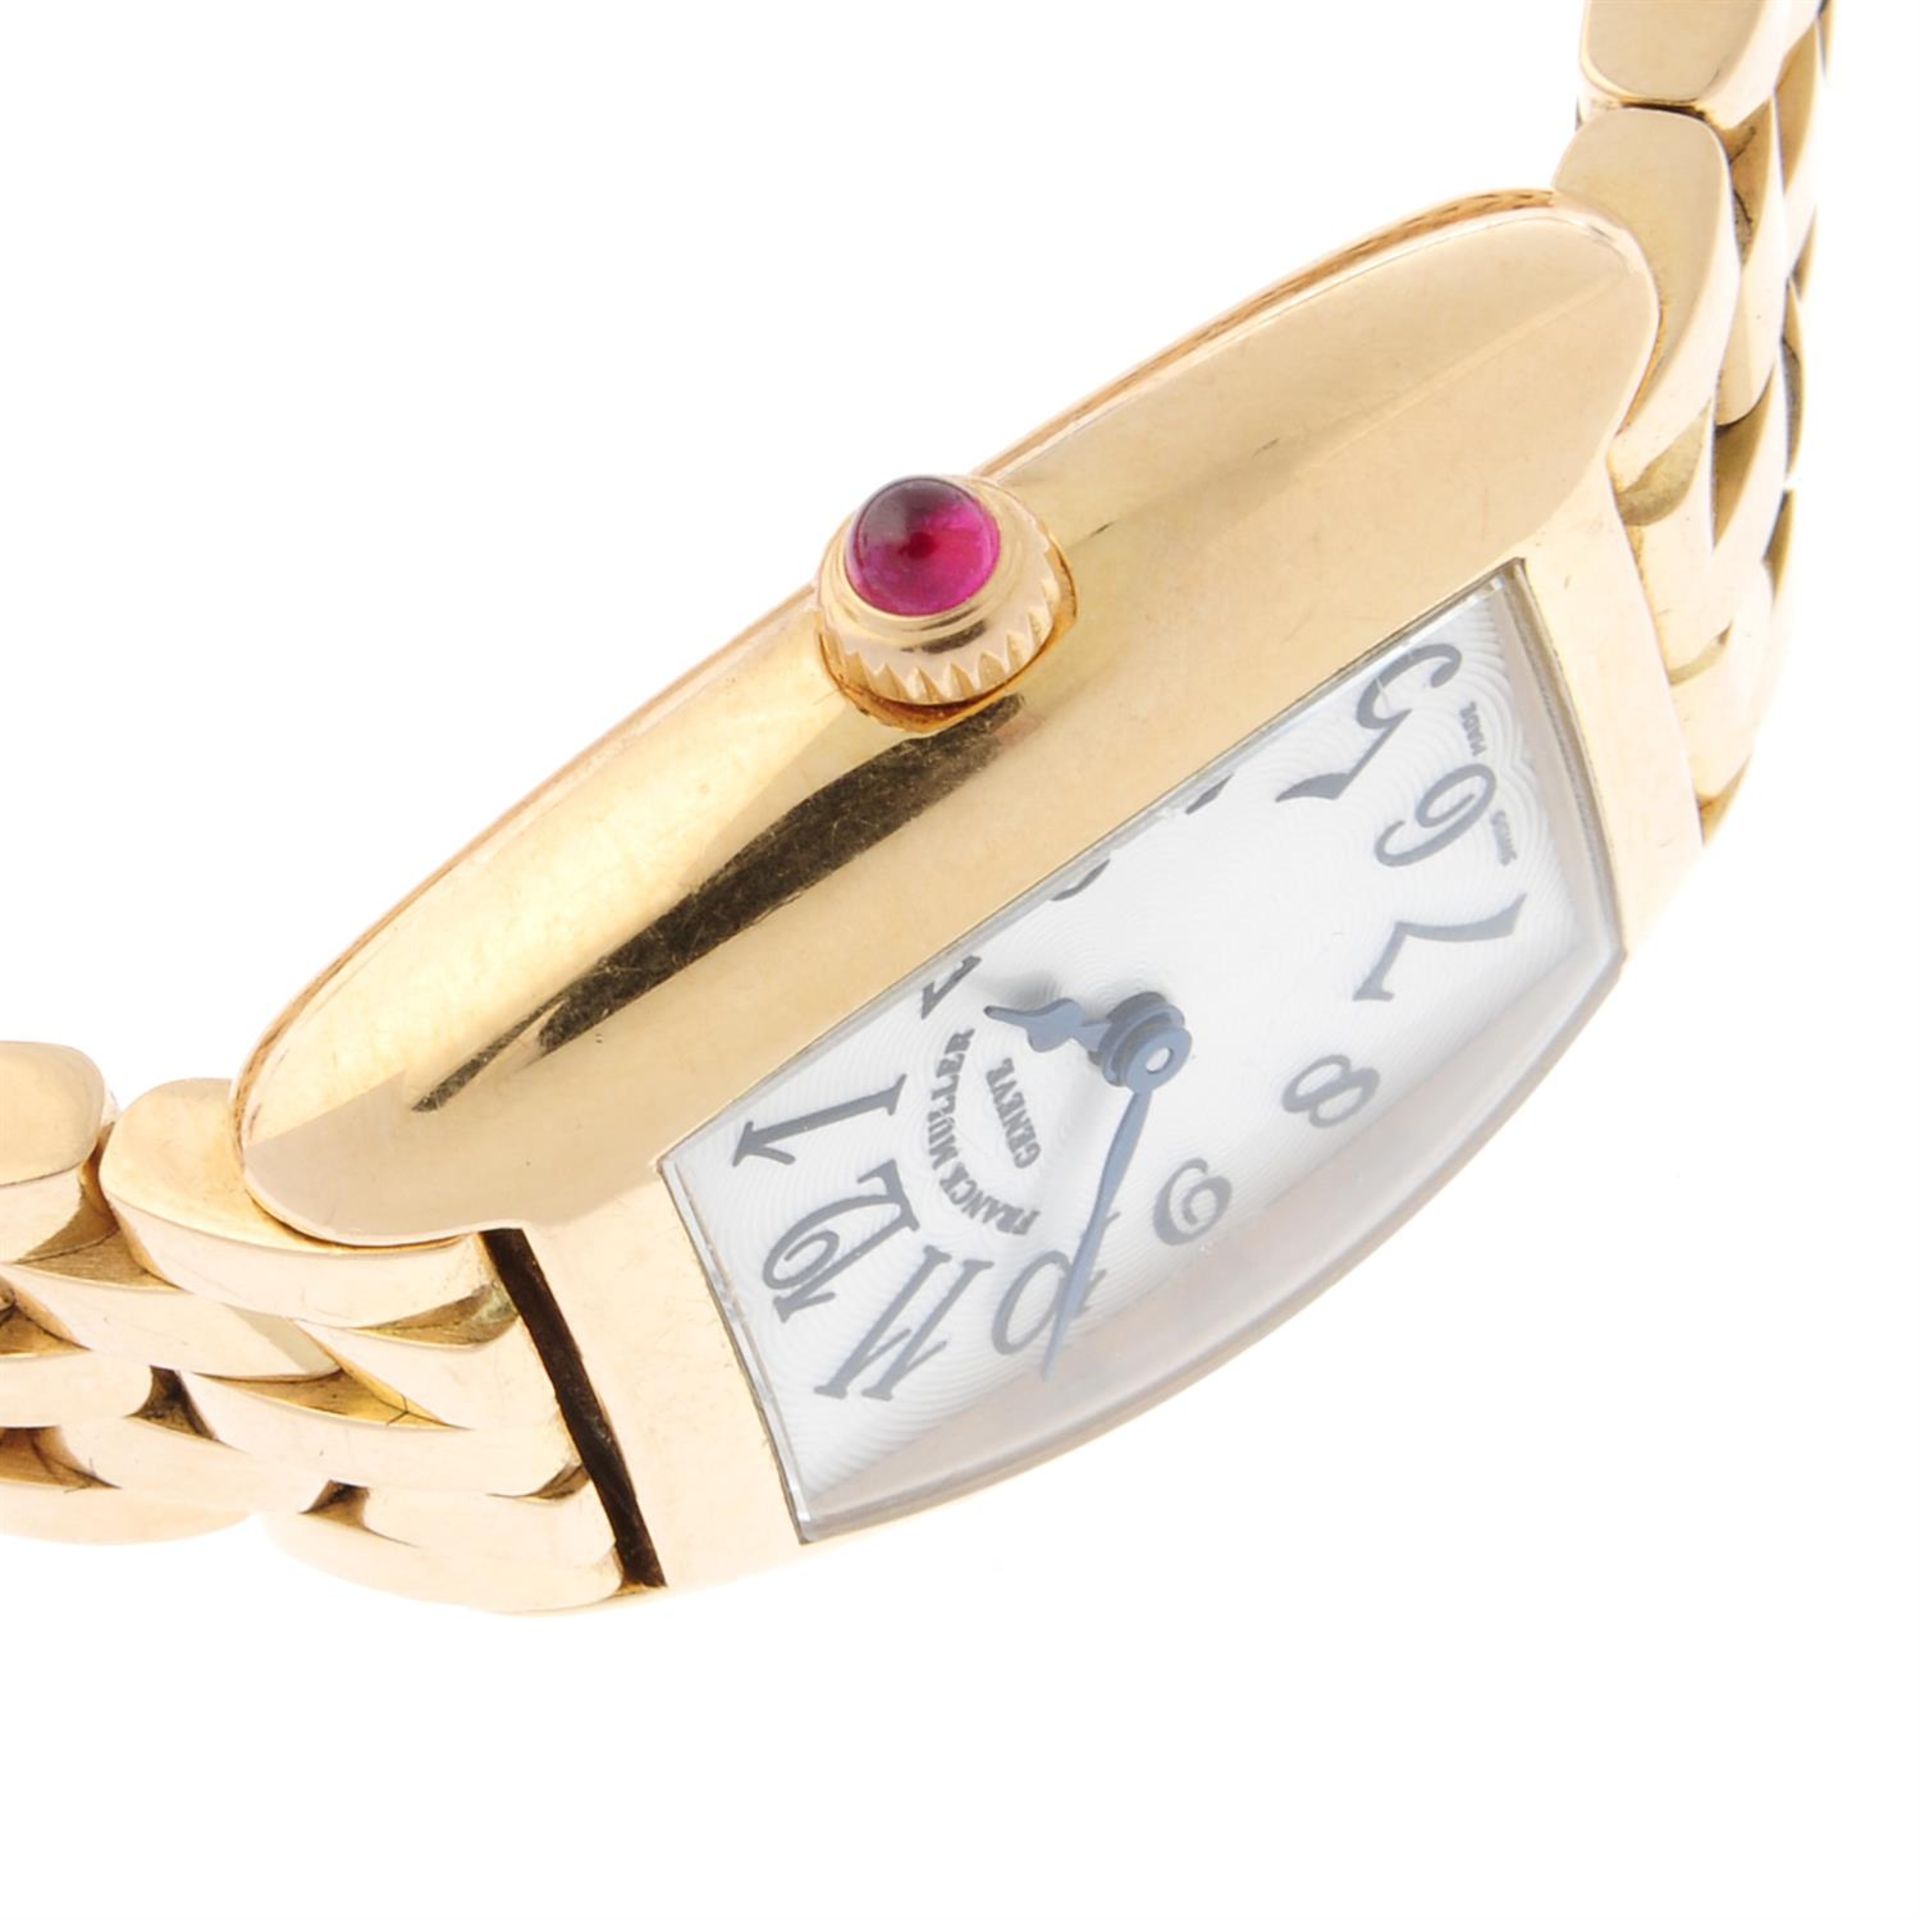 FRANCK MULLER - an 18ct rose gold Curvex bracelet watch, 25mm. - Image 3 of 7